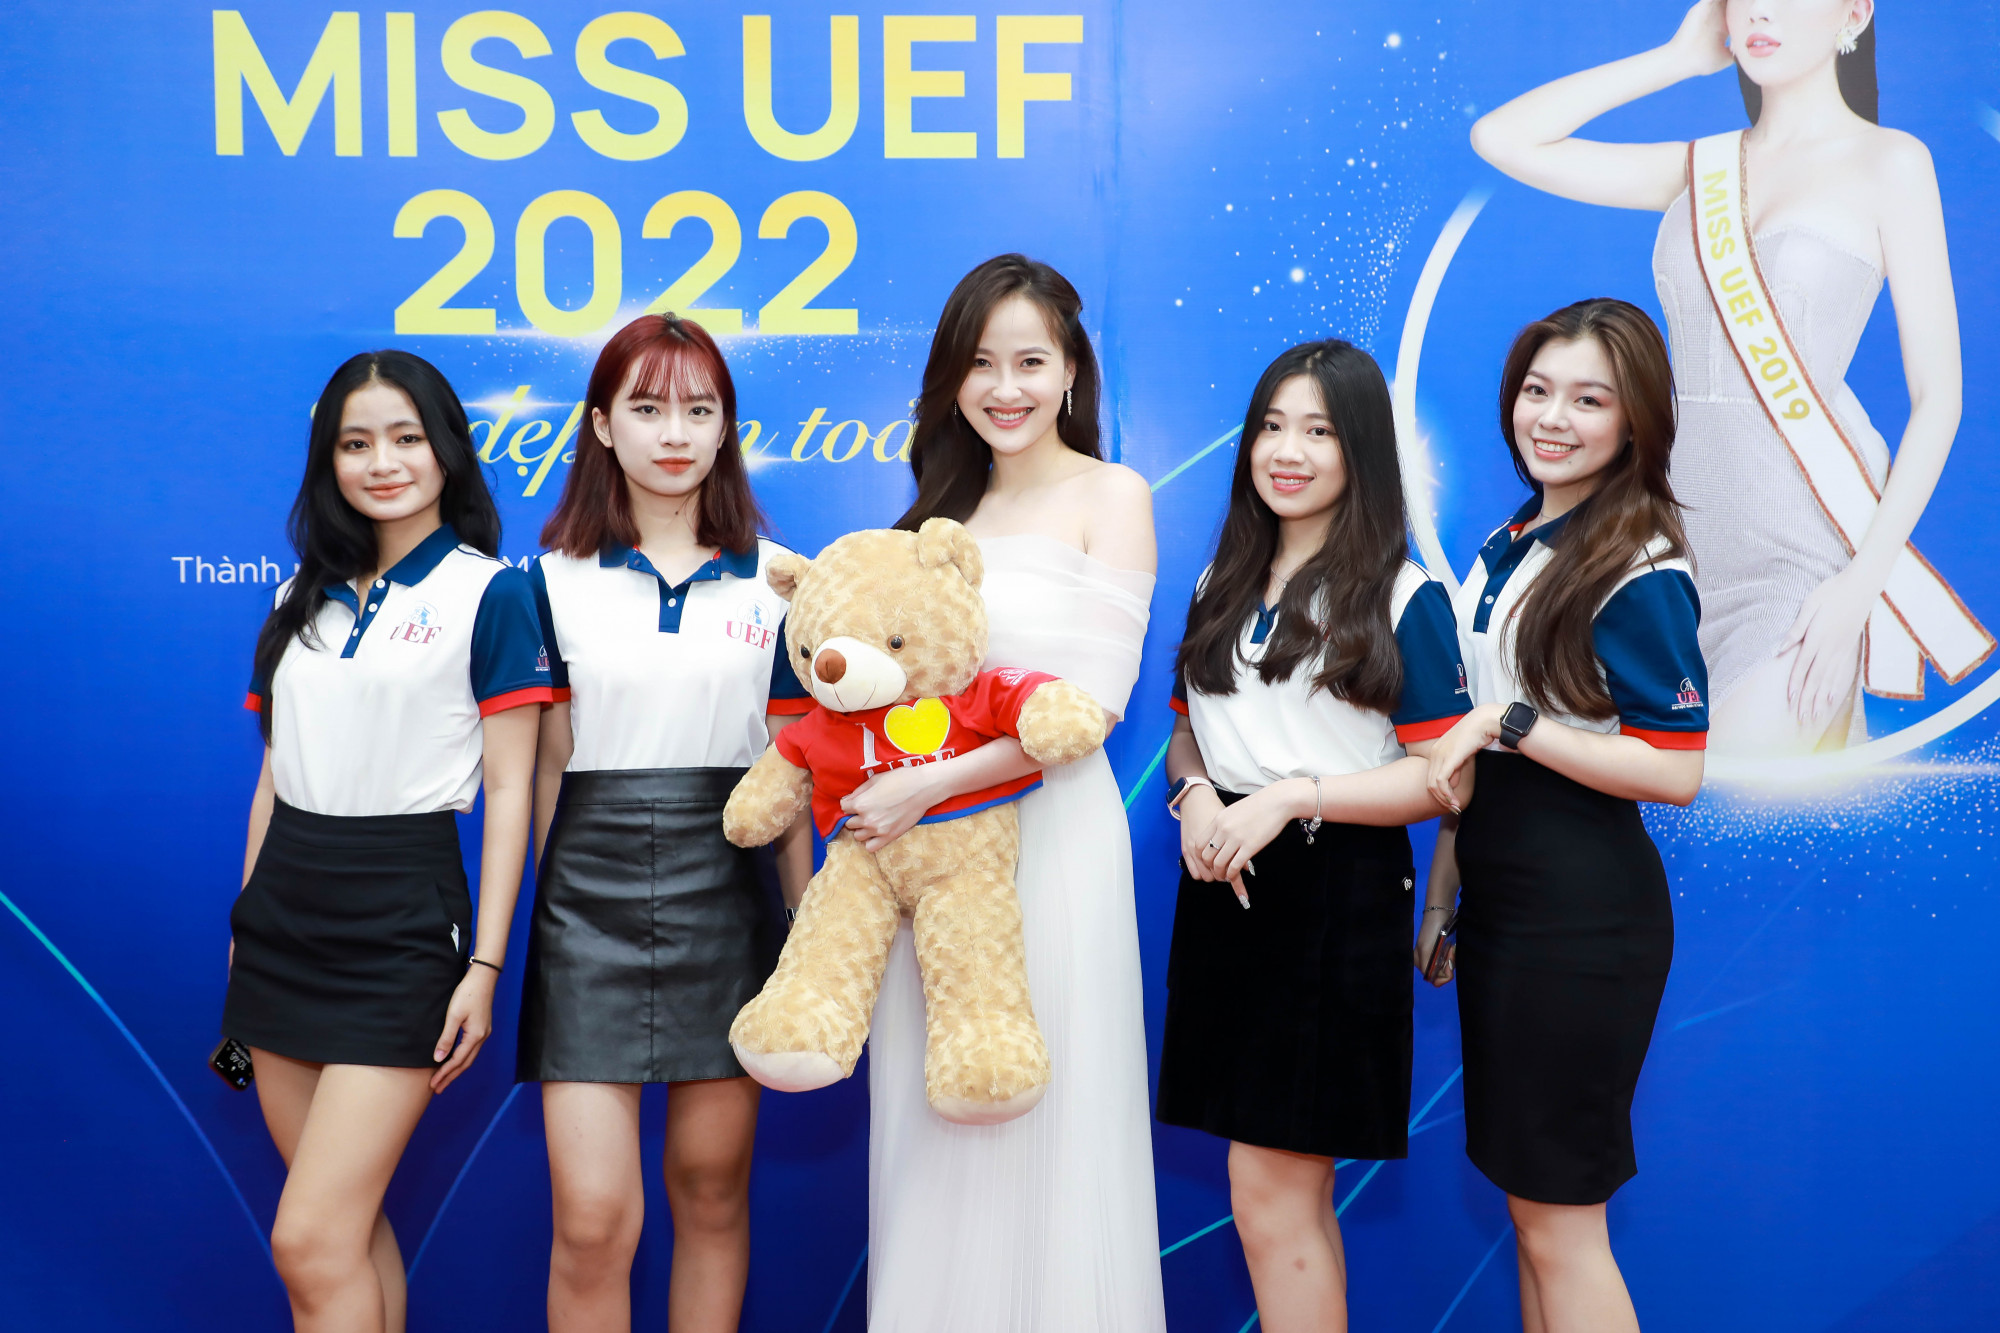 Miss UEF 2022 chính thức được phát động và nhận hồ sơ đến 5/11 - Ảnh: UEF